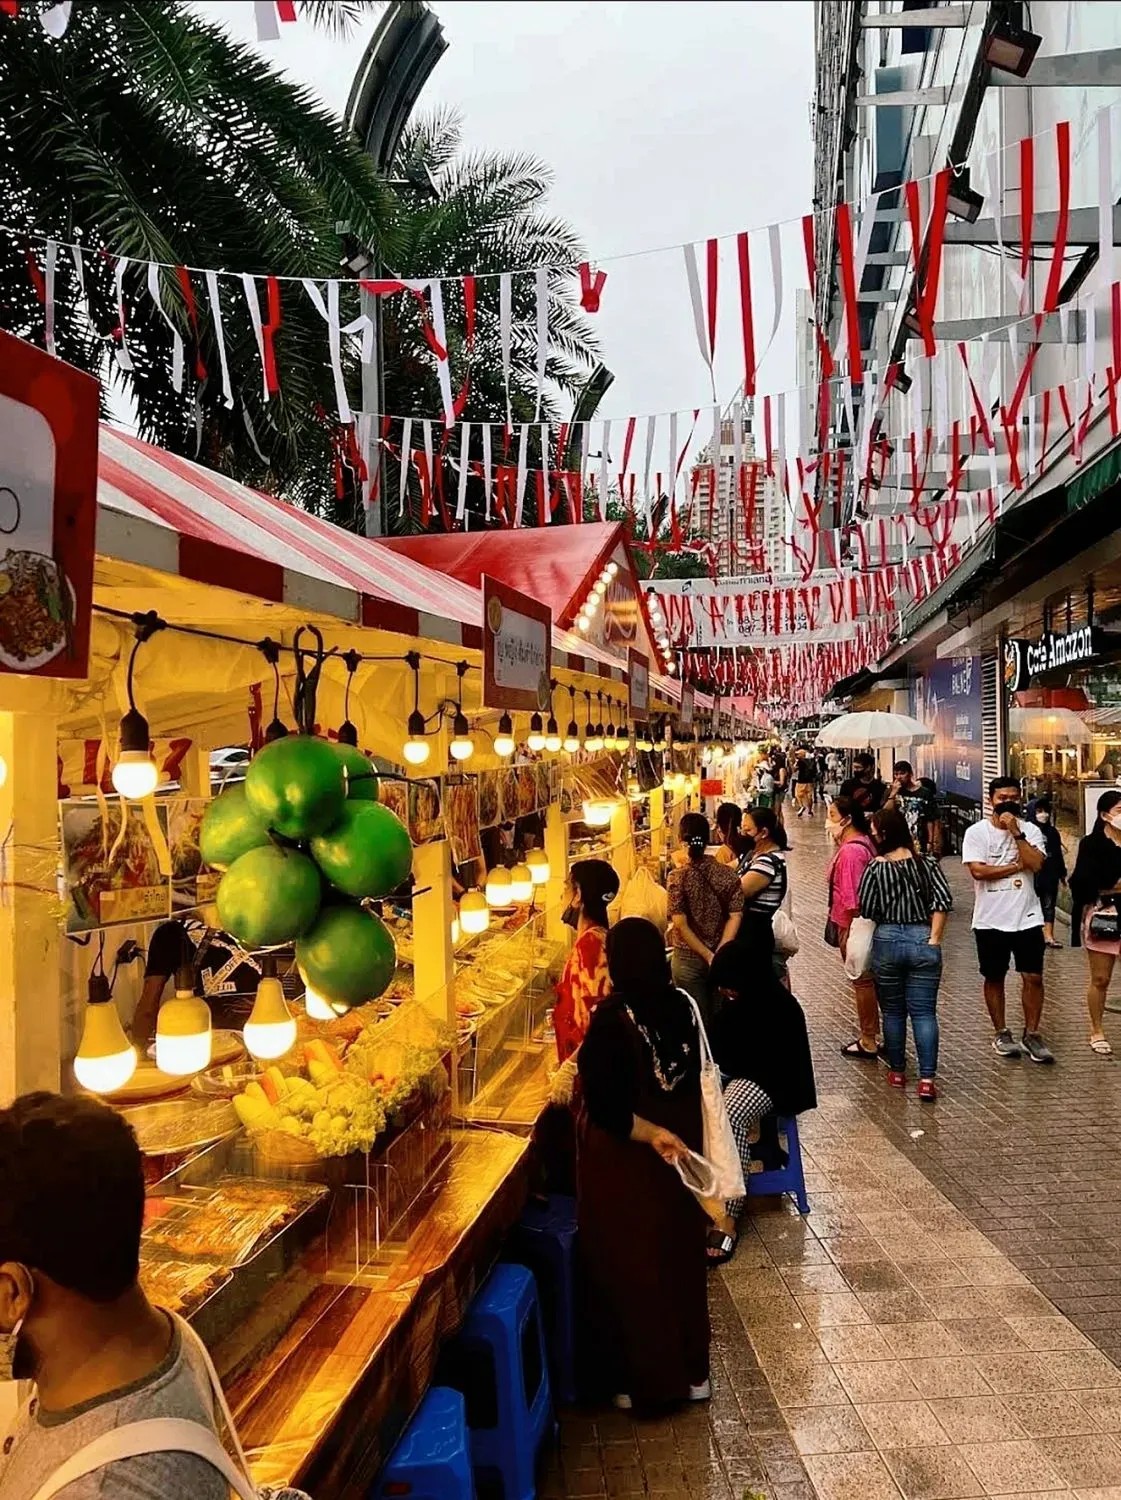 Ảnh chính Trip - lịch trình Khám phá quanh khu chợ Pratunam | Khu mua sắm SIÊU RẺ ở Bangkok [Thái Lan]